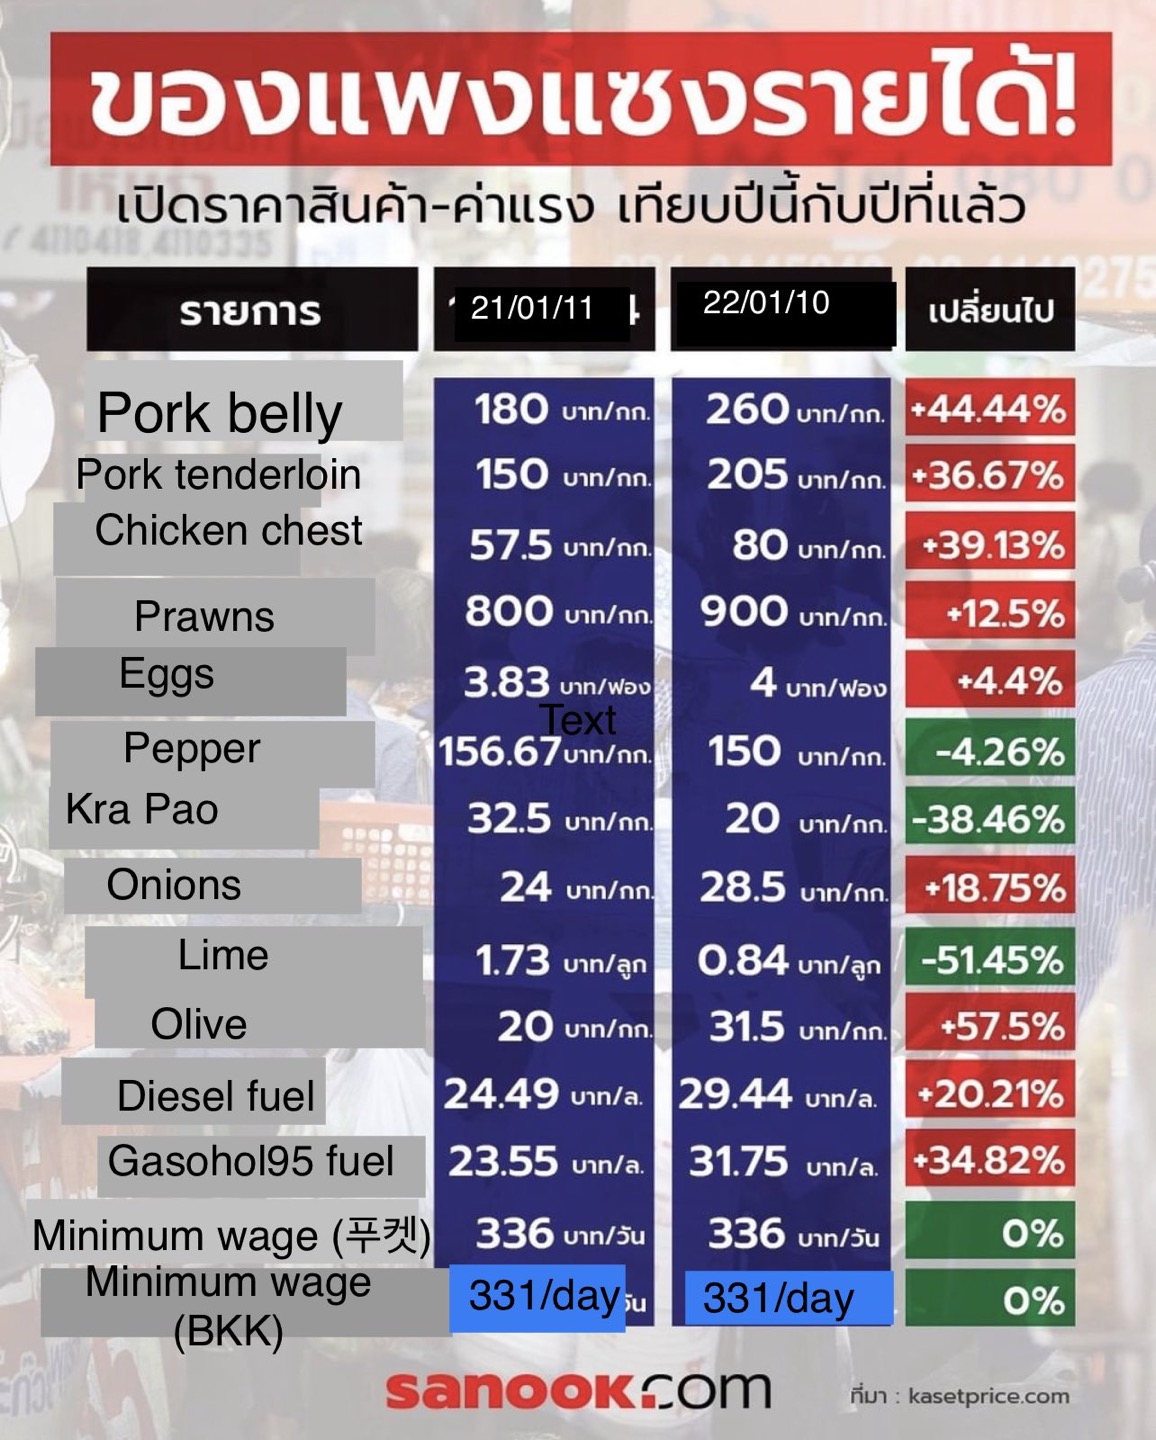 태국의 전년1월  대비 물가상승률. 돼지고기가격은 44% 닭가슴살은 39%, 올리브유 가격은 57%올랐다. 방콕과 푸껫의 최저임금만 오르지 않았다.